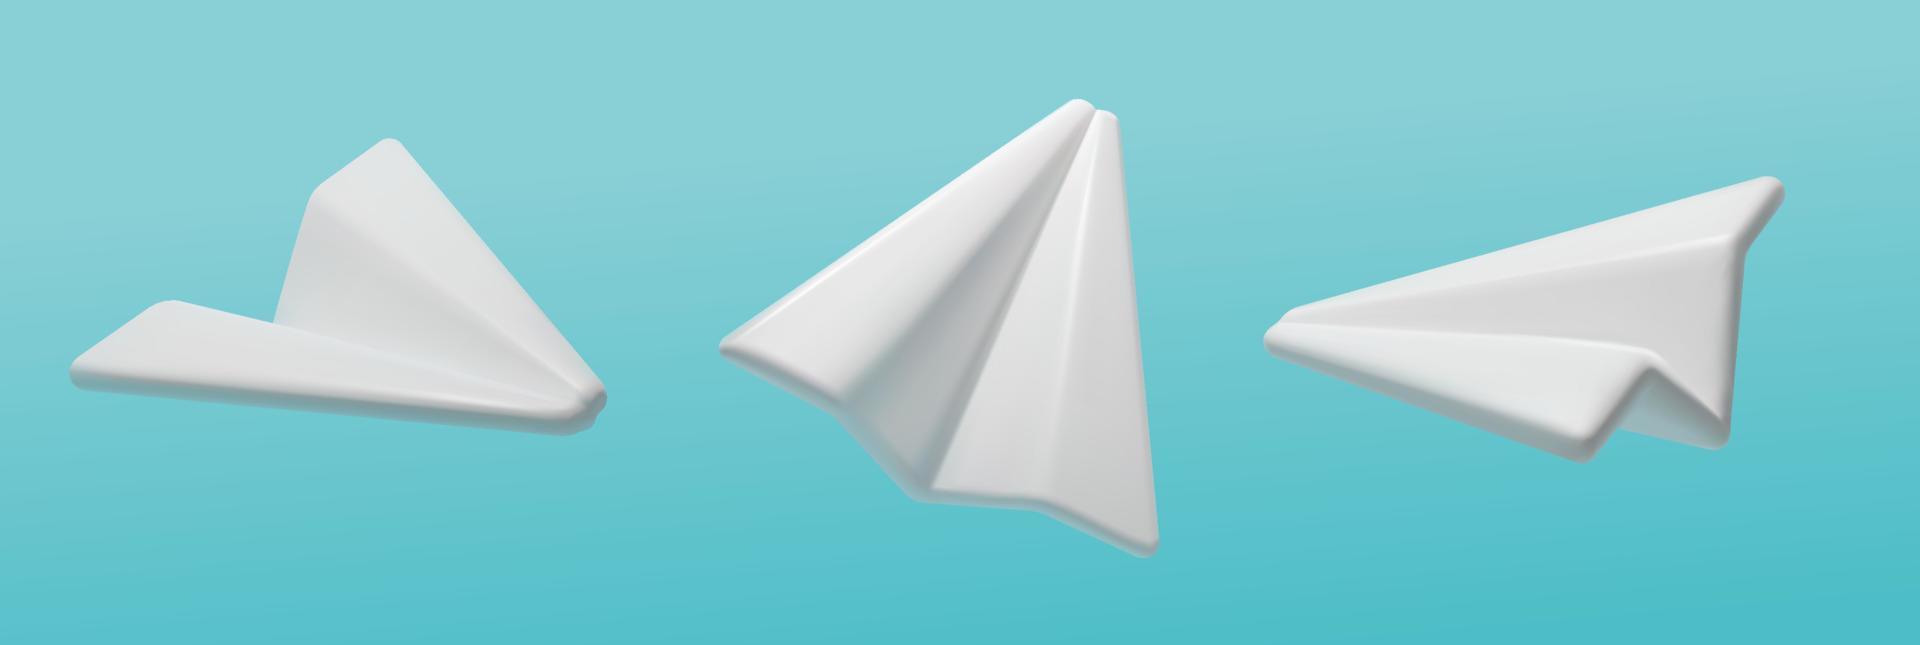 um conjunto de aviões de papel 3d em diferentes ângulos. ilustração vetorial realista em um estilo moderno. o conceito de mensagens para mídias sociais vetor